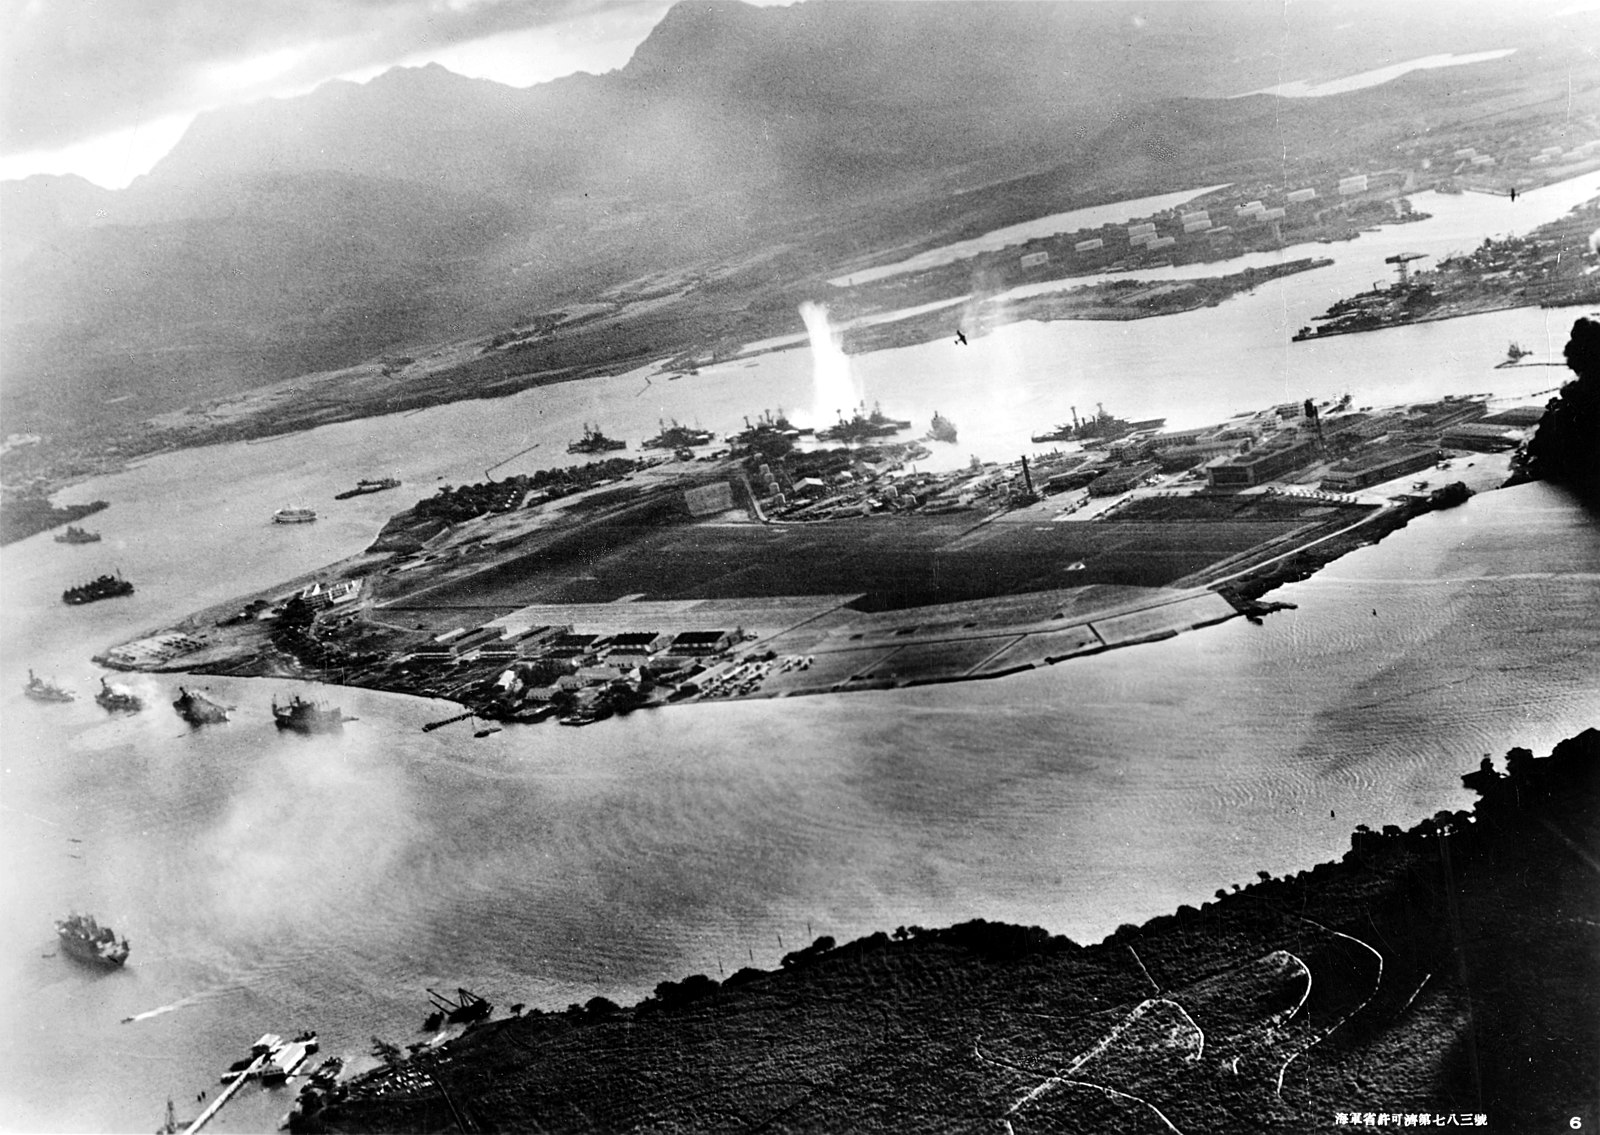 Útok na Pearl Harbor a konšpirácie